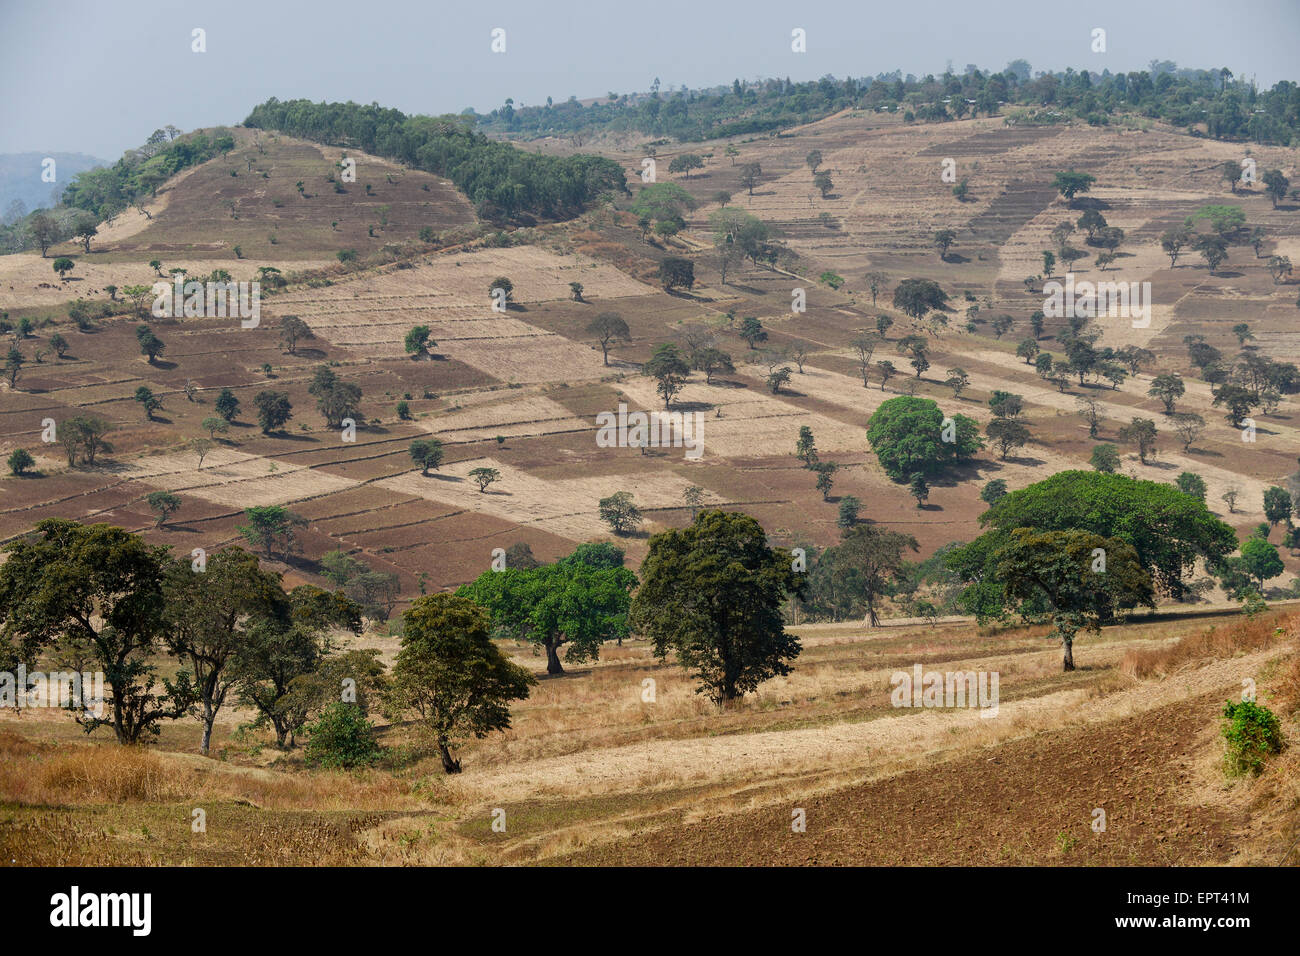 Etiopia Gambela, piccole aziende agricole in highland / AETHIOPIEN Gambela, kleinbaeuerliche Landwirtschaft im Hochland Foto Stock